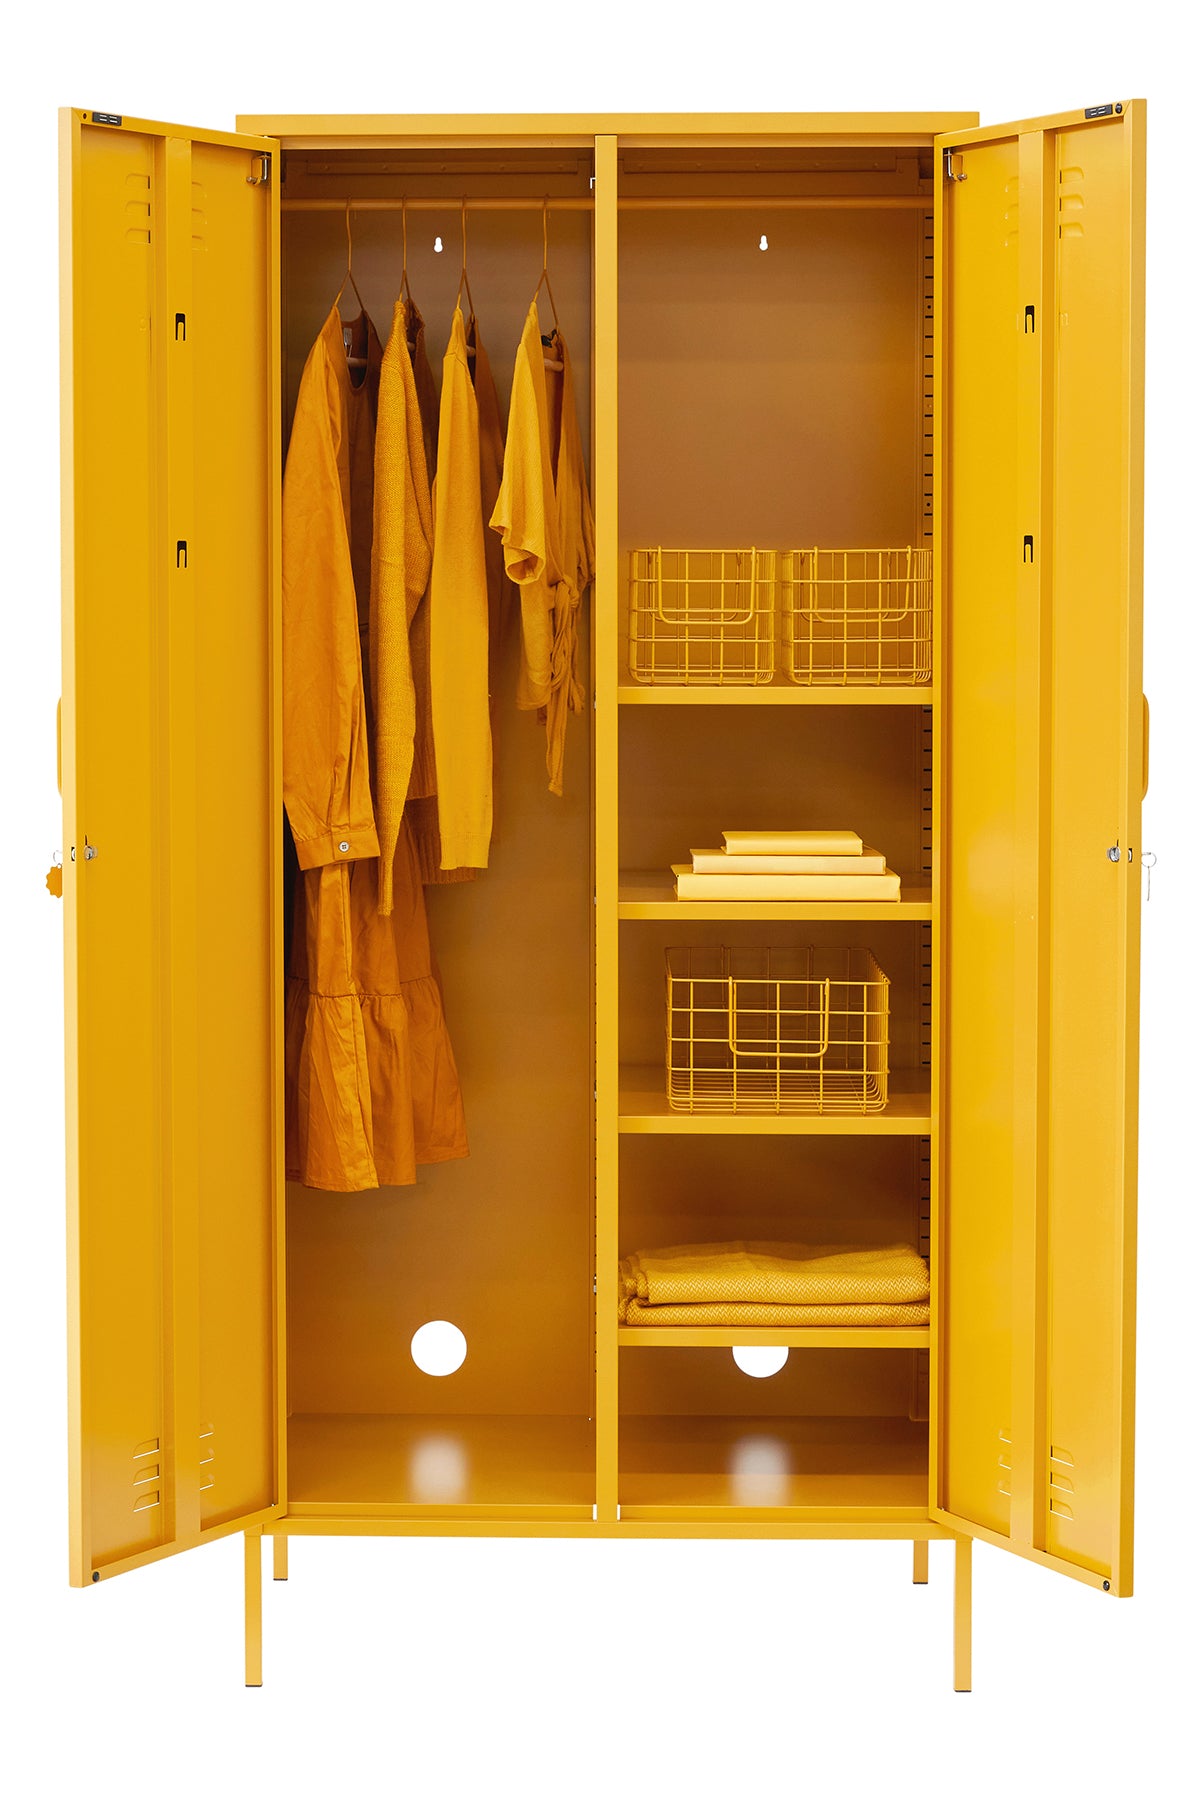 The Twinny Locker in Navy By Mustard Made